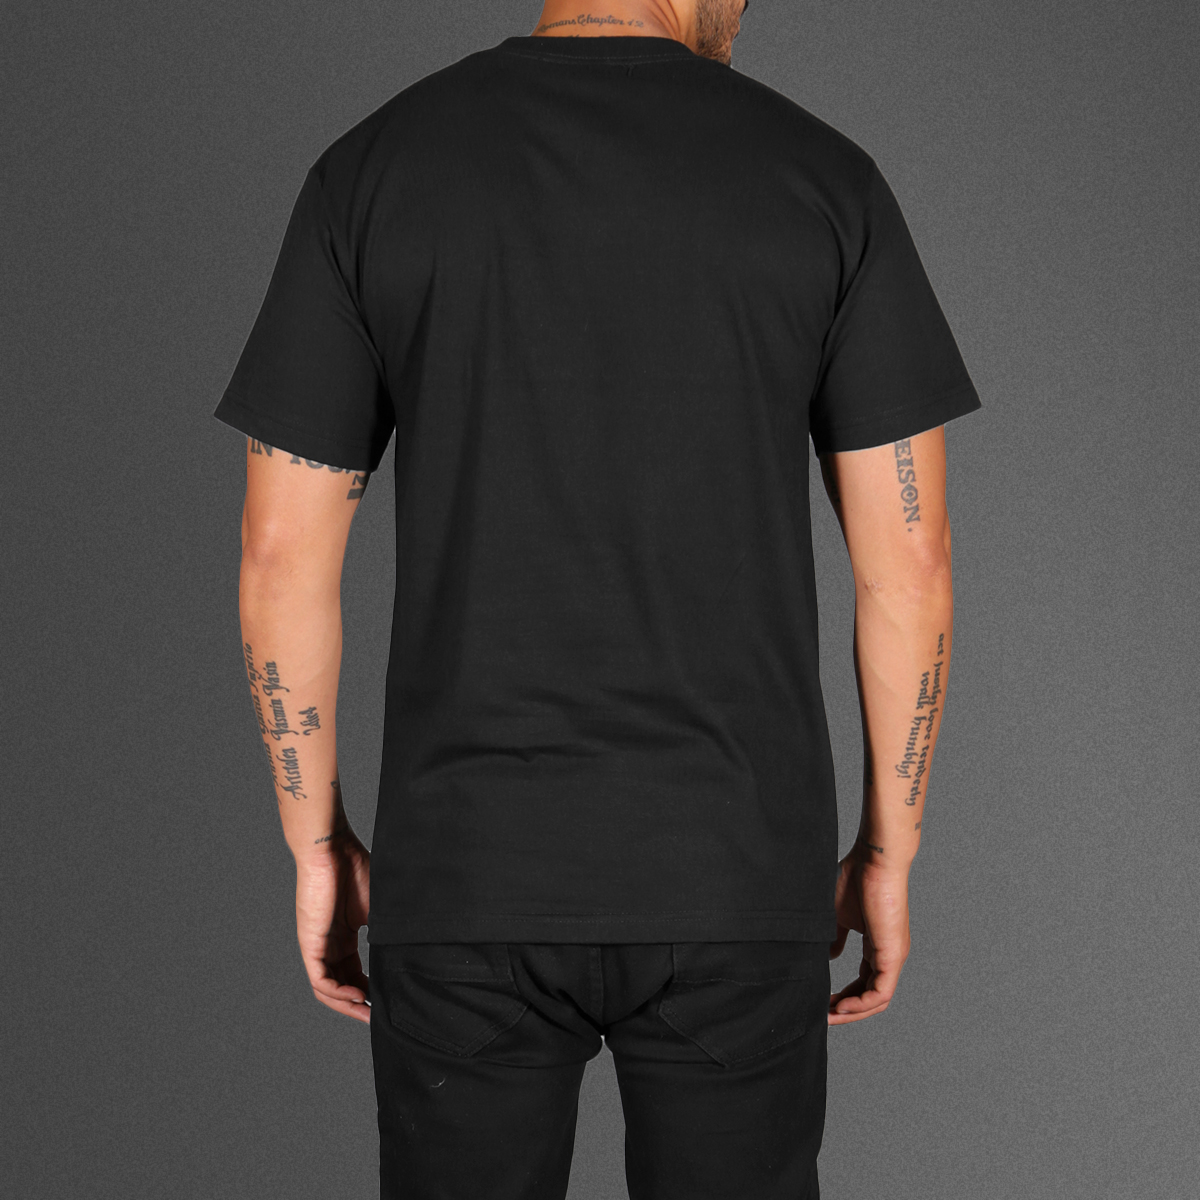 plain black tshirt back-1200×1200 – Art For Refuge